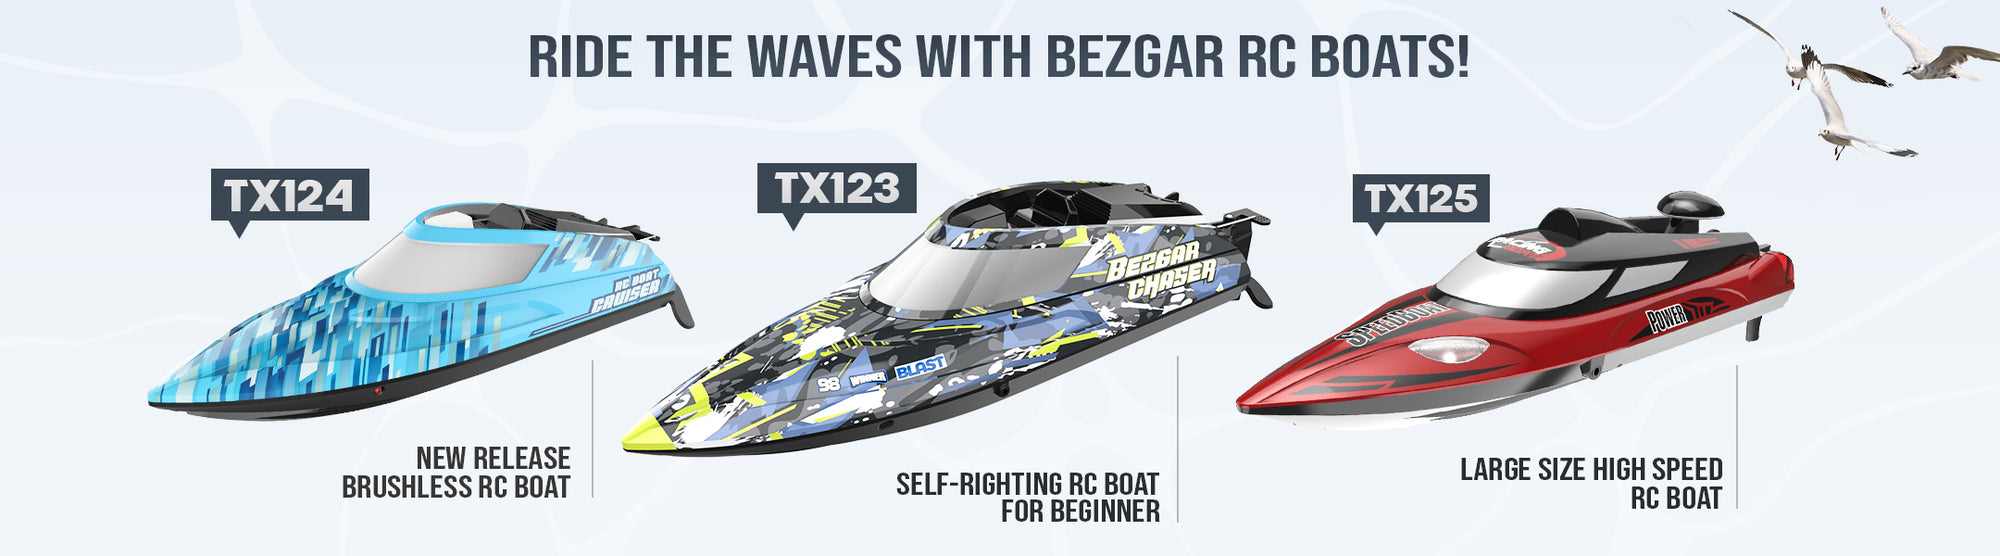 bezgar high speed rc boats